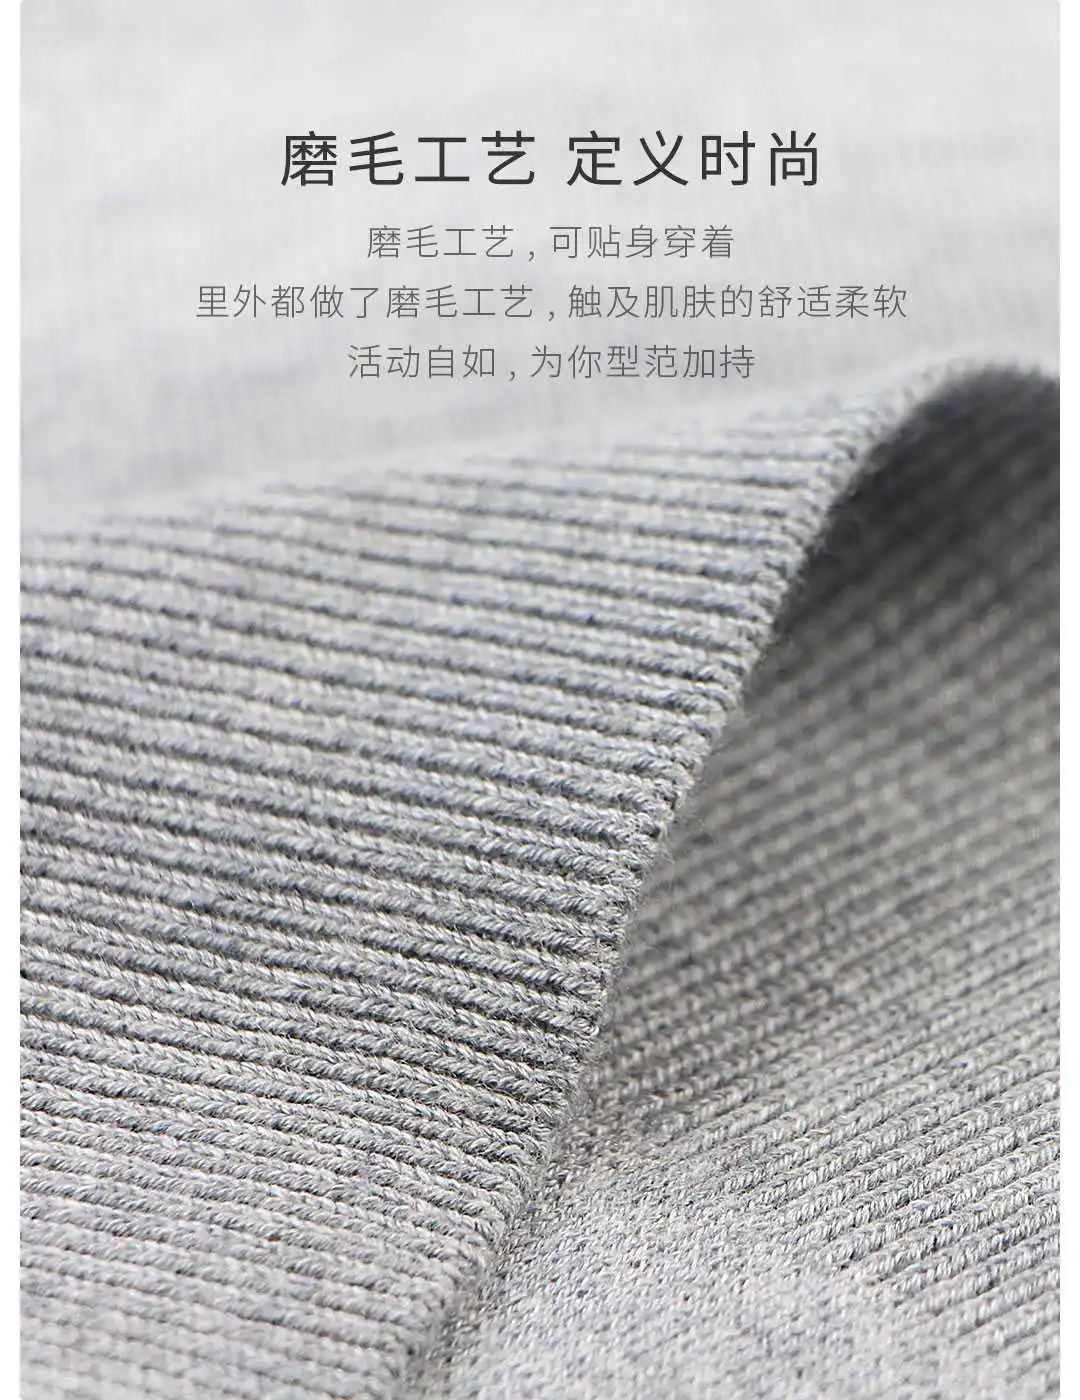 xiaomi youpin DSDO полувысокий воротник свитер машинная стирка теплая дышащая приятная для кожи Базовая нижняя рубашка для мужчин